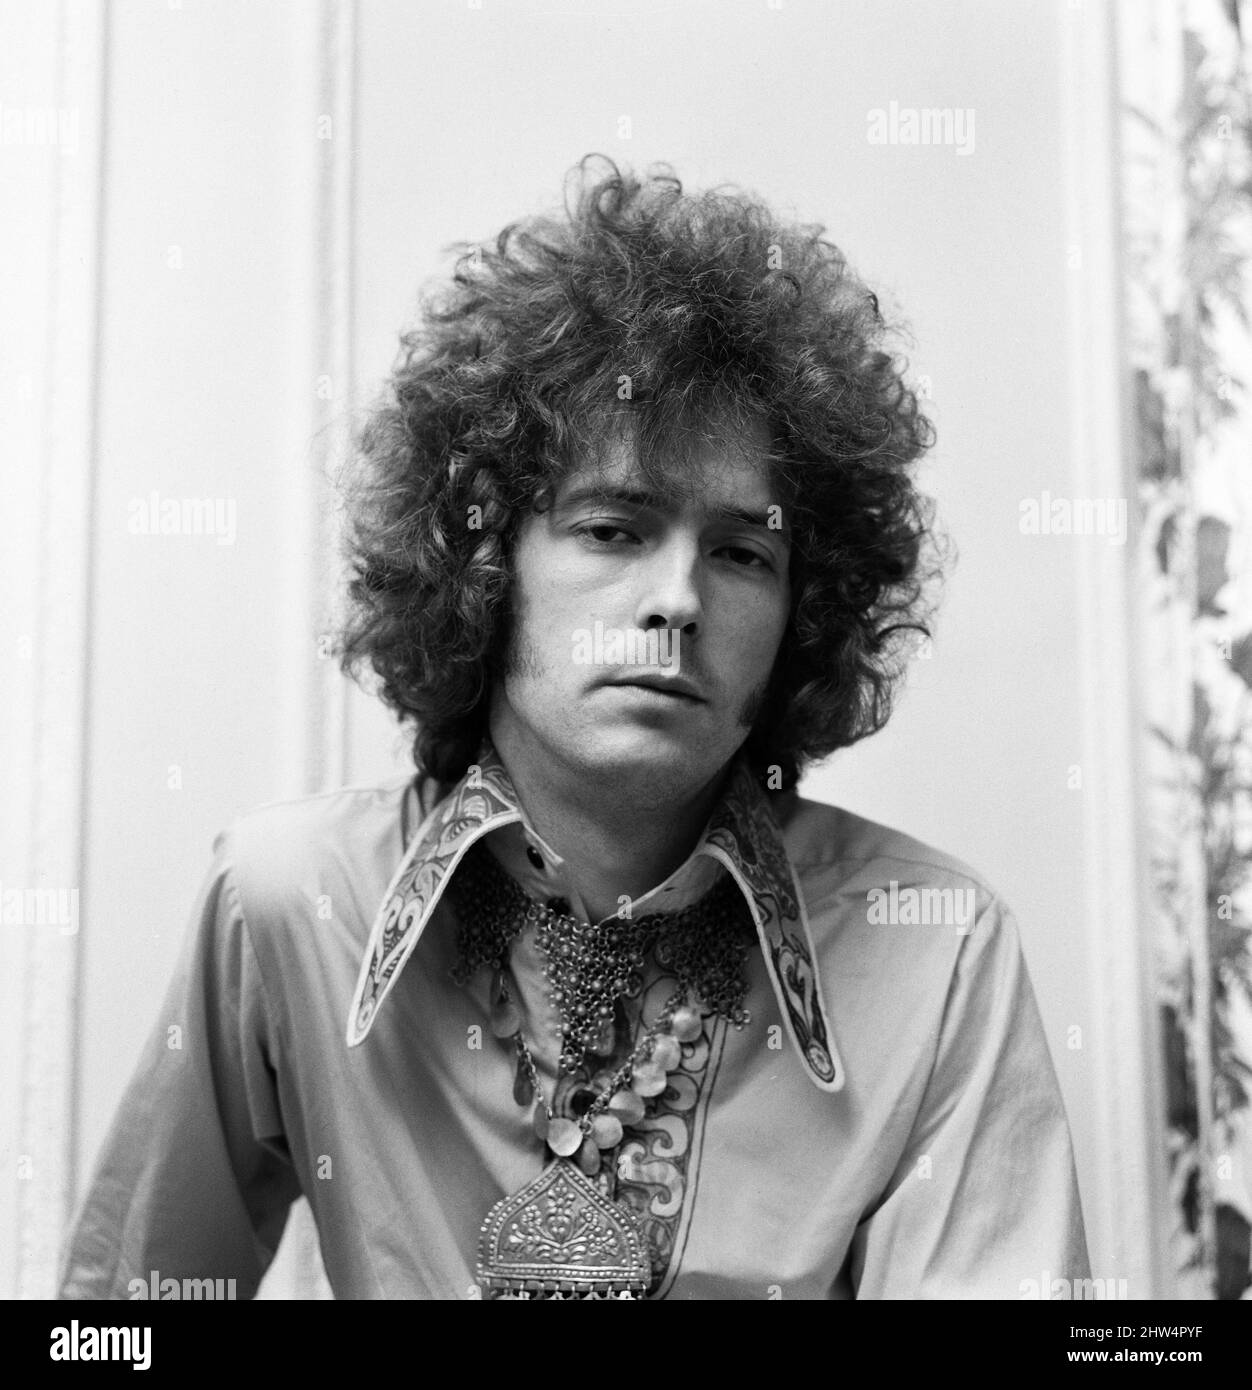 Eric Clapton de Cream montre ses cheveux bouclés qui est créé pour lui par un coiffeur de West End. 20th juin 1967. Banque D'Images